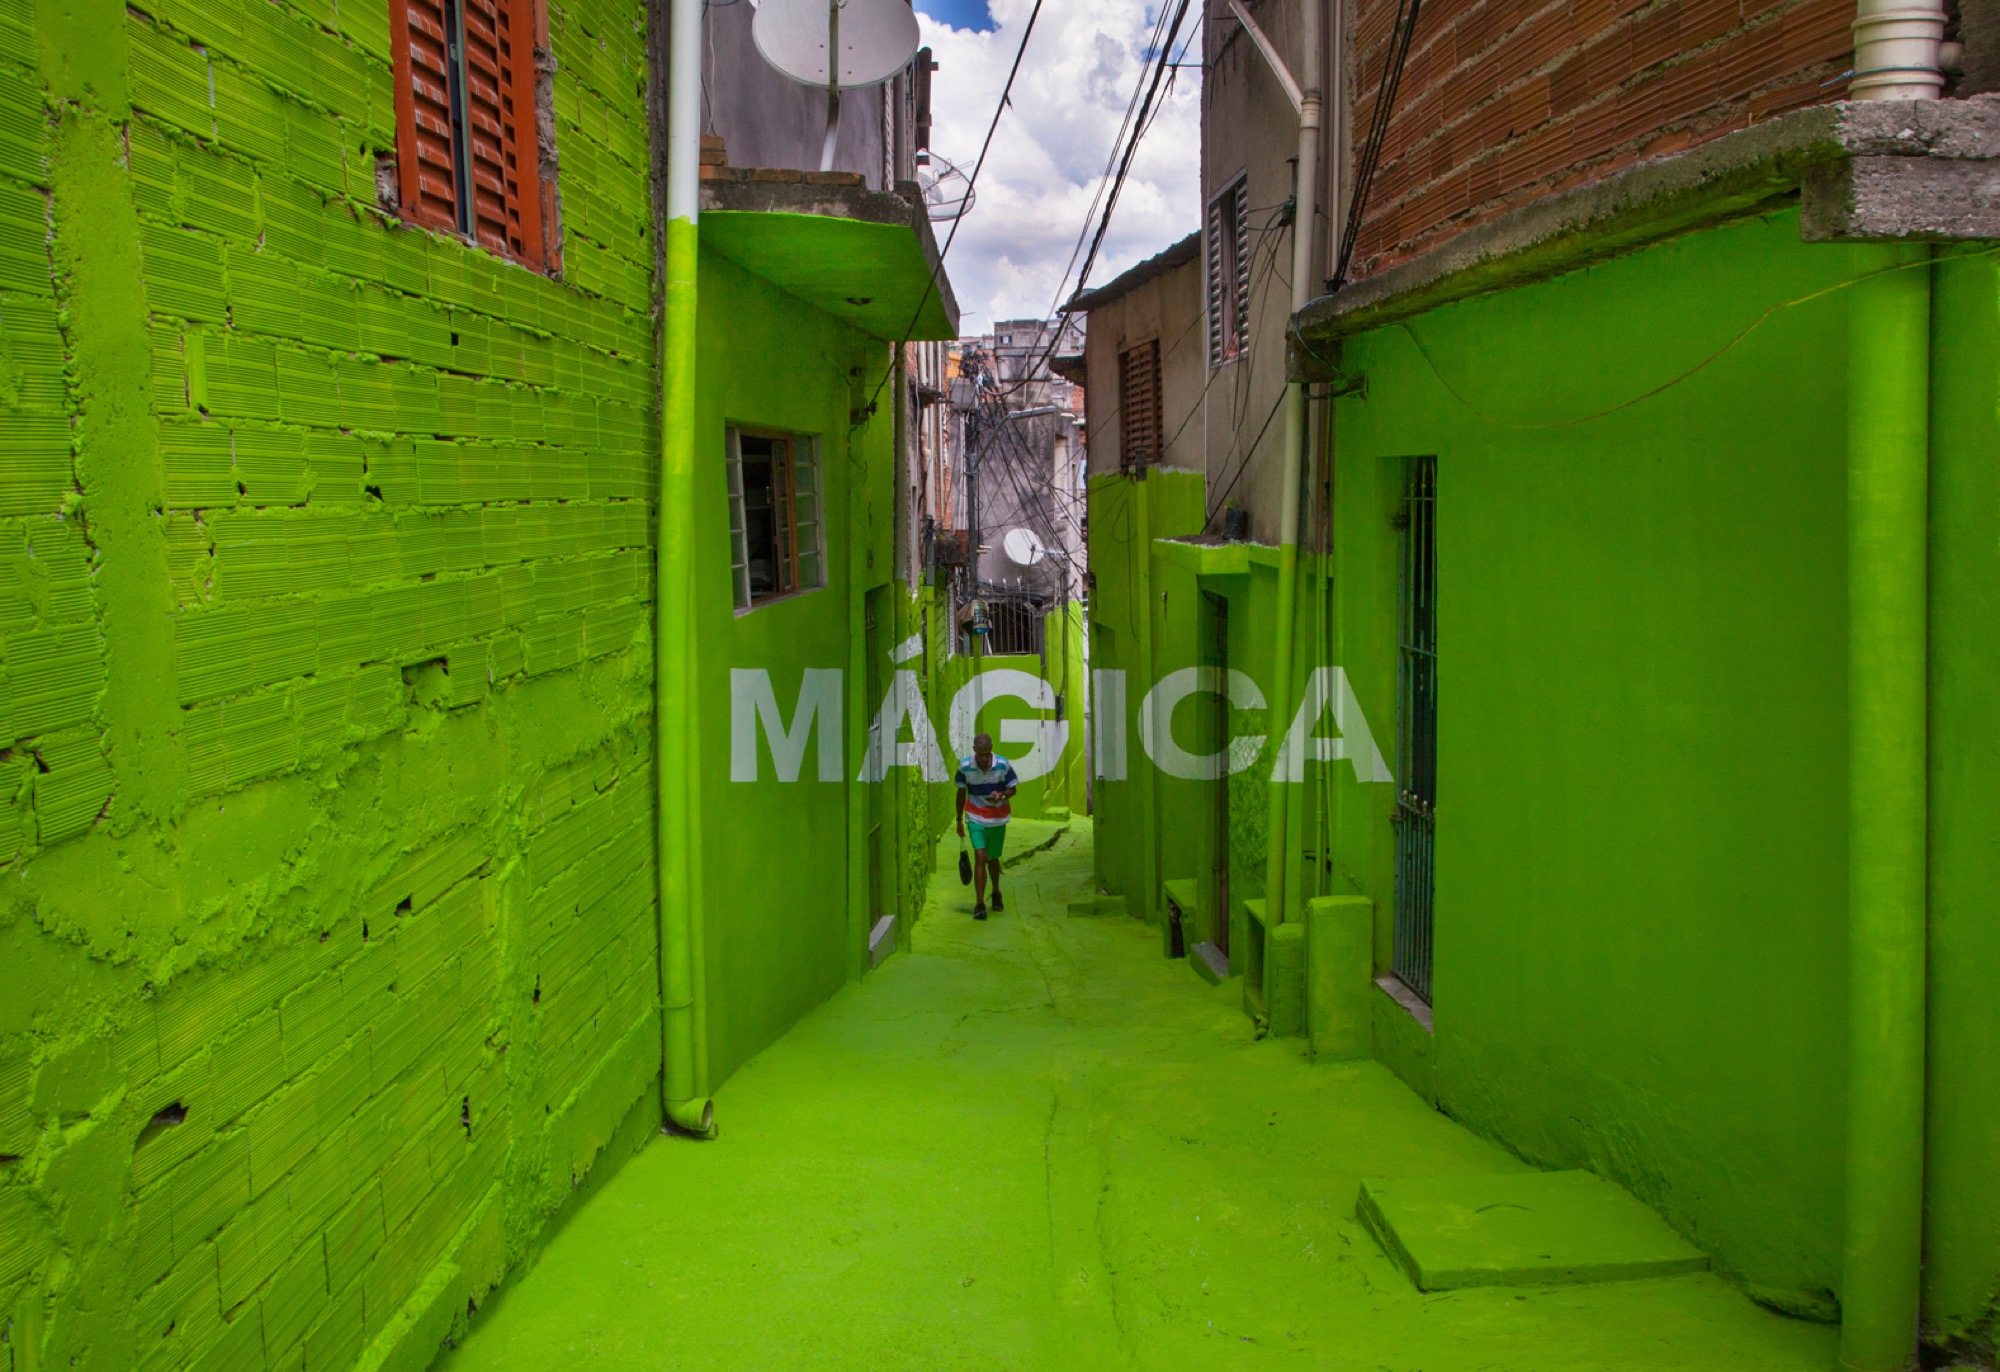 Ils peignent la magie et la poésie dans les rues de São Paulo